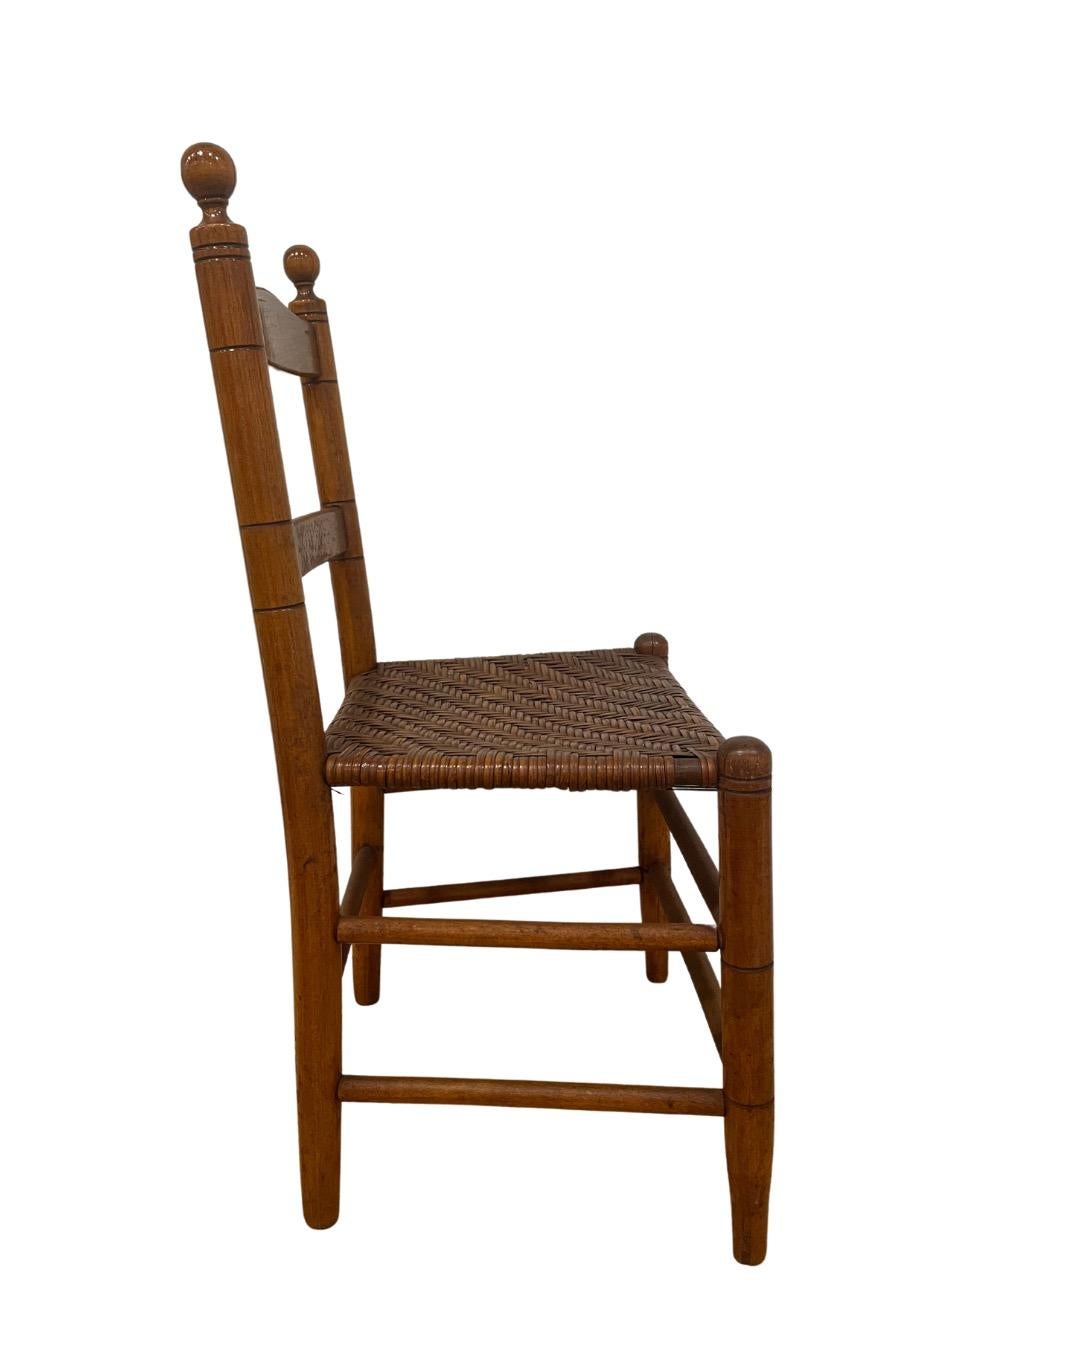 Chaise d'enfant en bois attribuée à F.A. Sinclair de Mottville, NY.  Estimé au 19e siècle. Finition brun moyen de la chaise et de l'assise. 

Les caractéristiques comprennent un dossier en forme d'échelle, des fleurons en forme de boule et des pieds